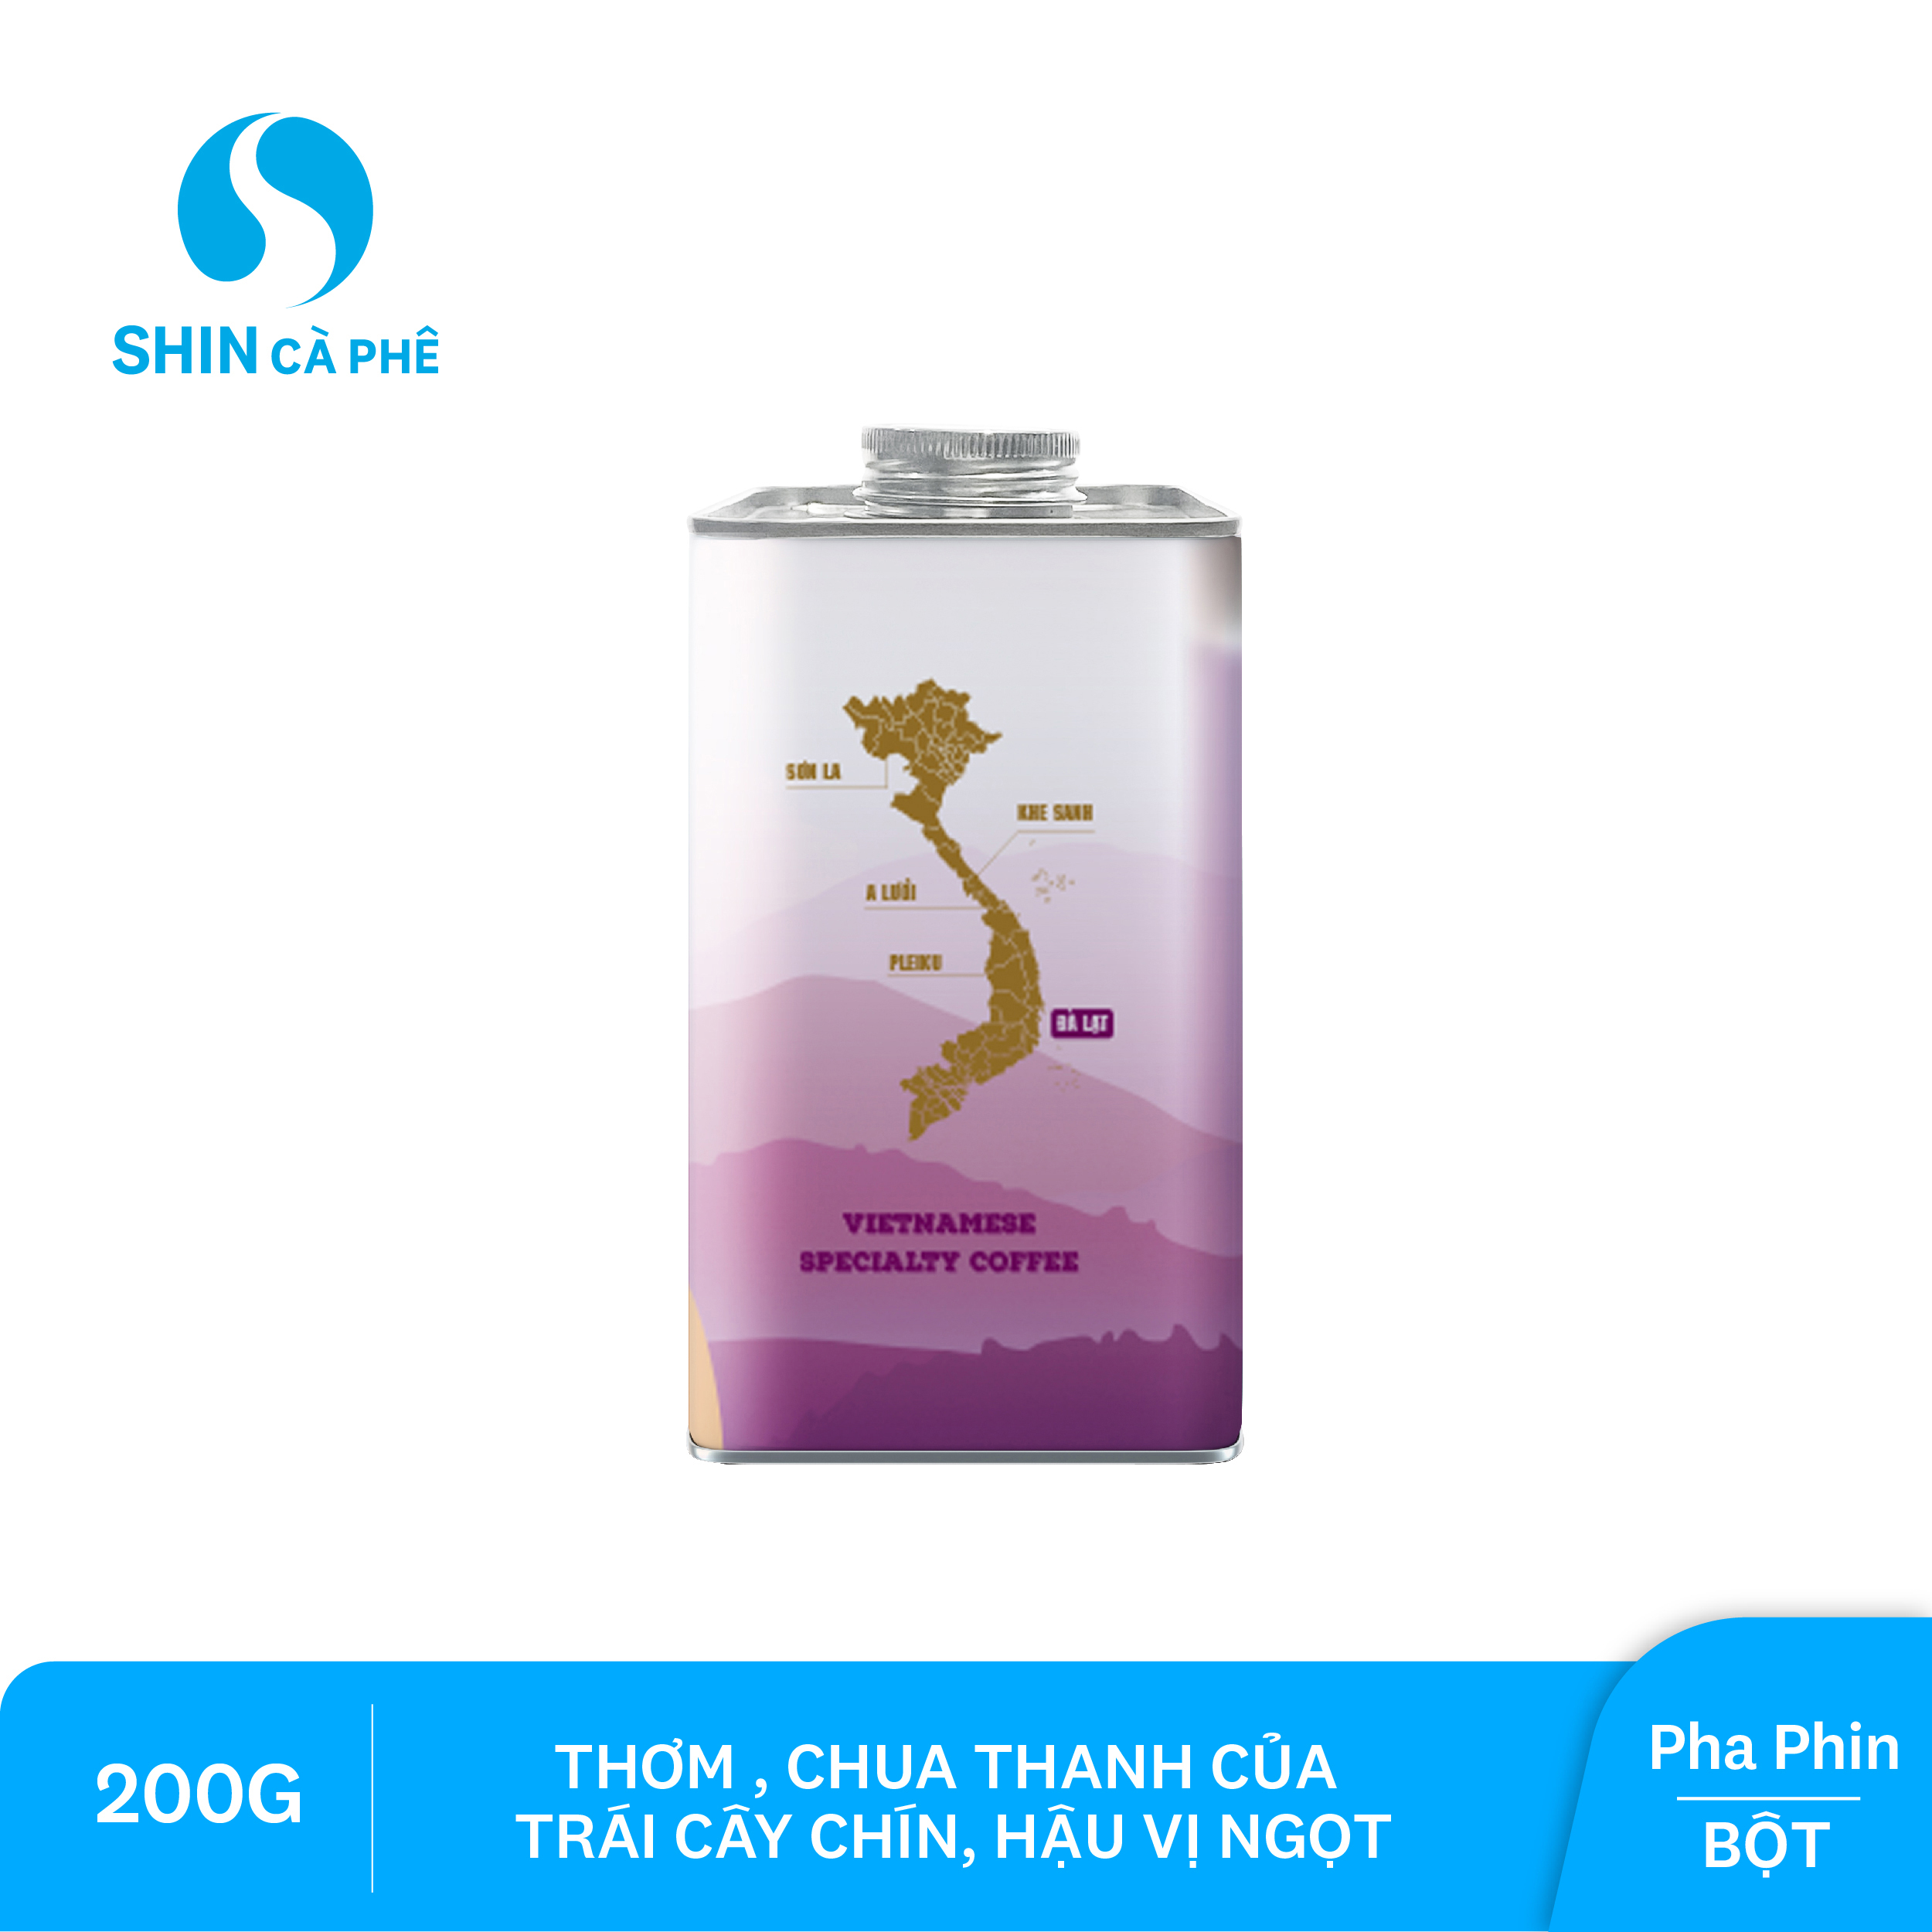 SHIN Cà phê - Cà phê pha phin Đà Lạt Blend - Hộp thiếc 200 gram (Bột)